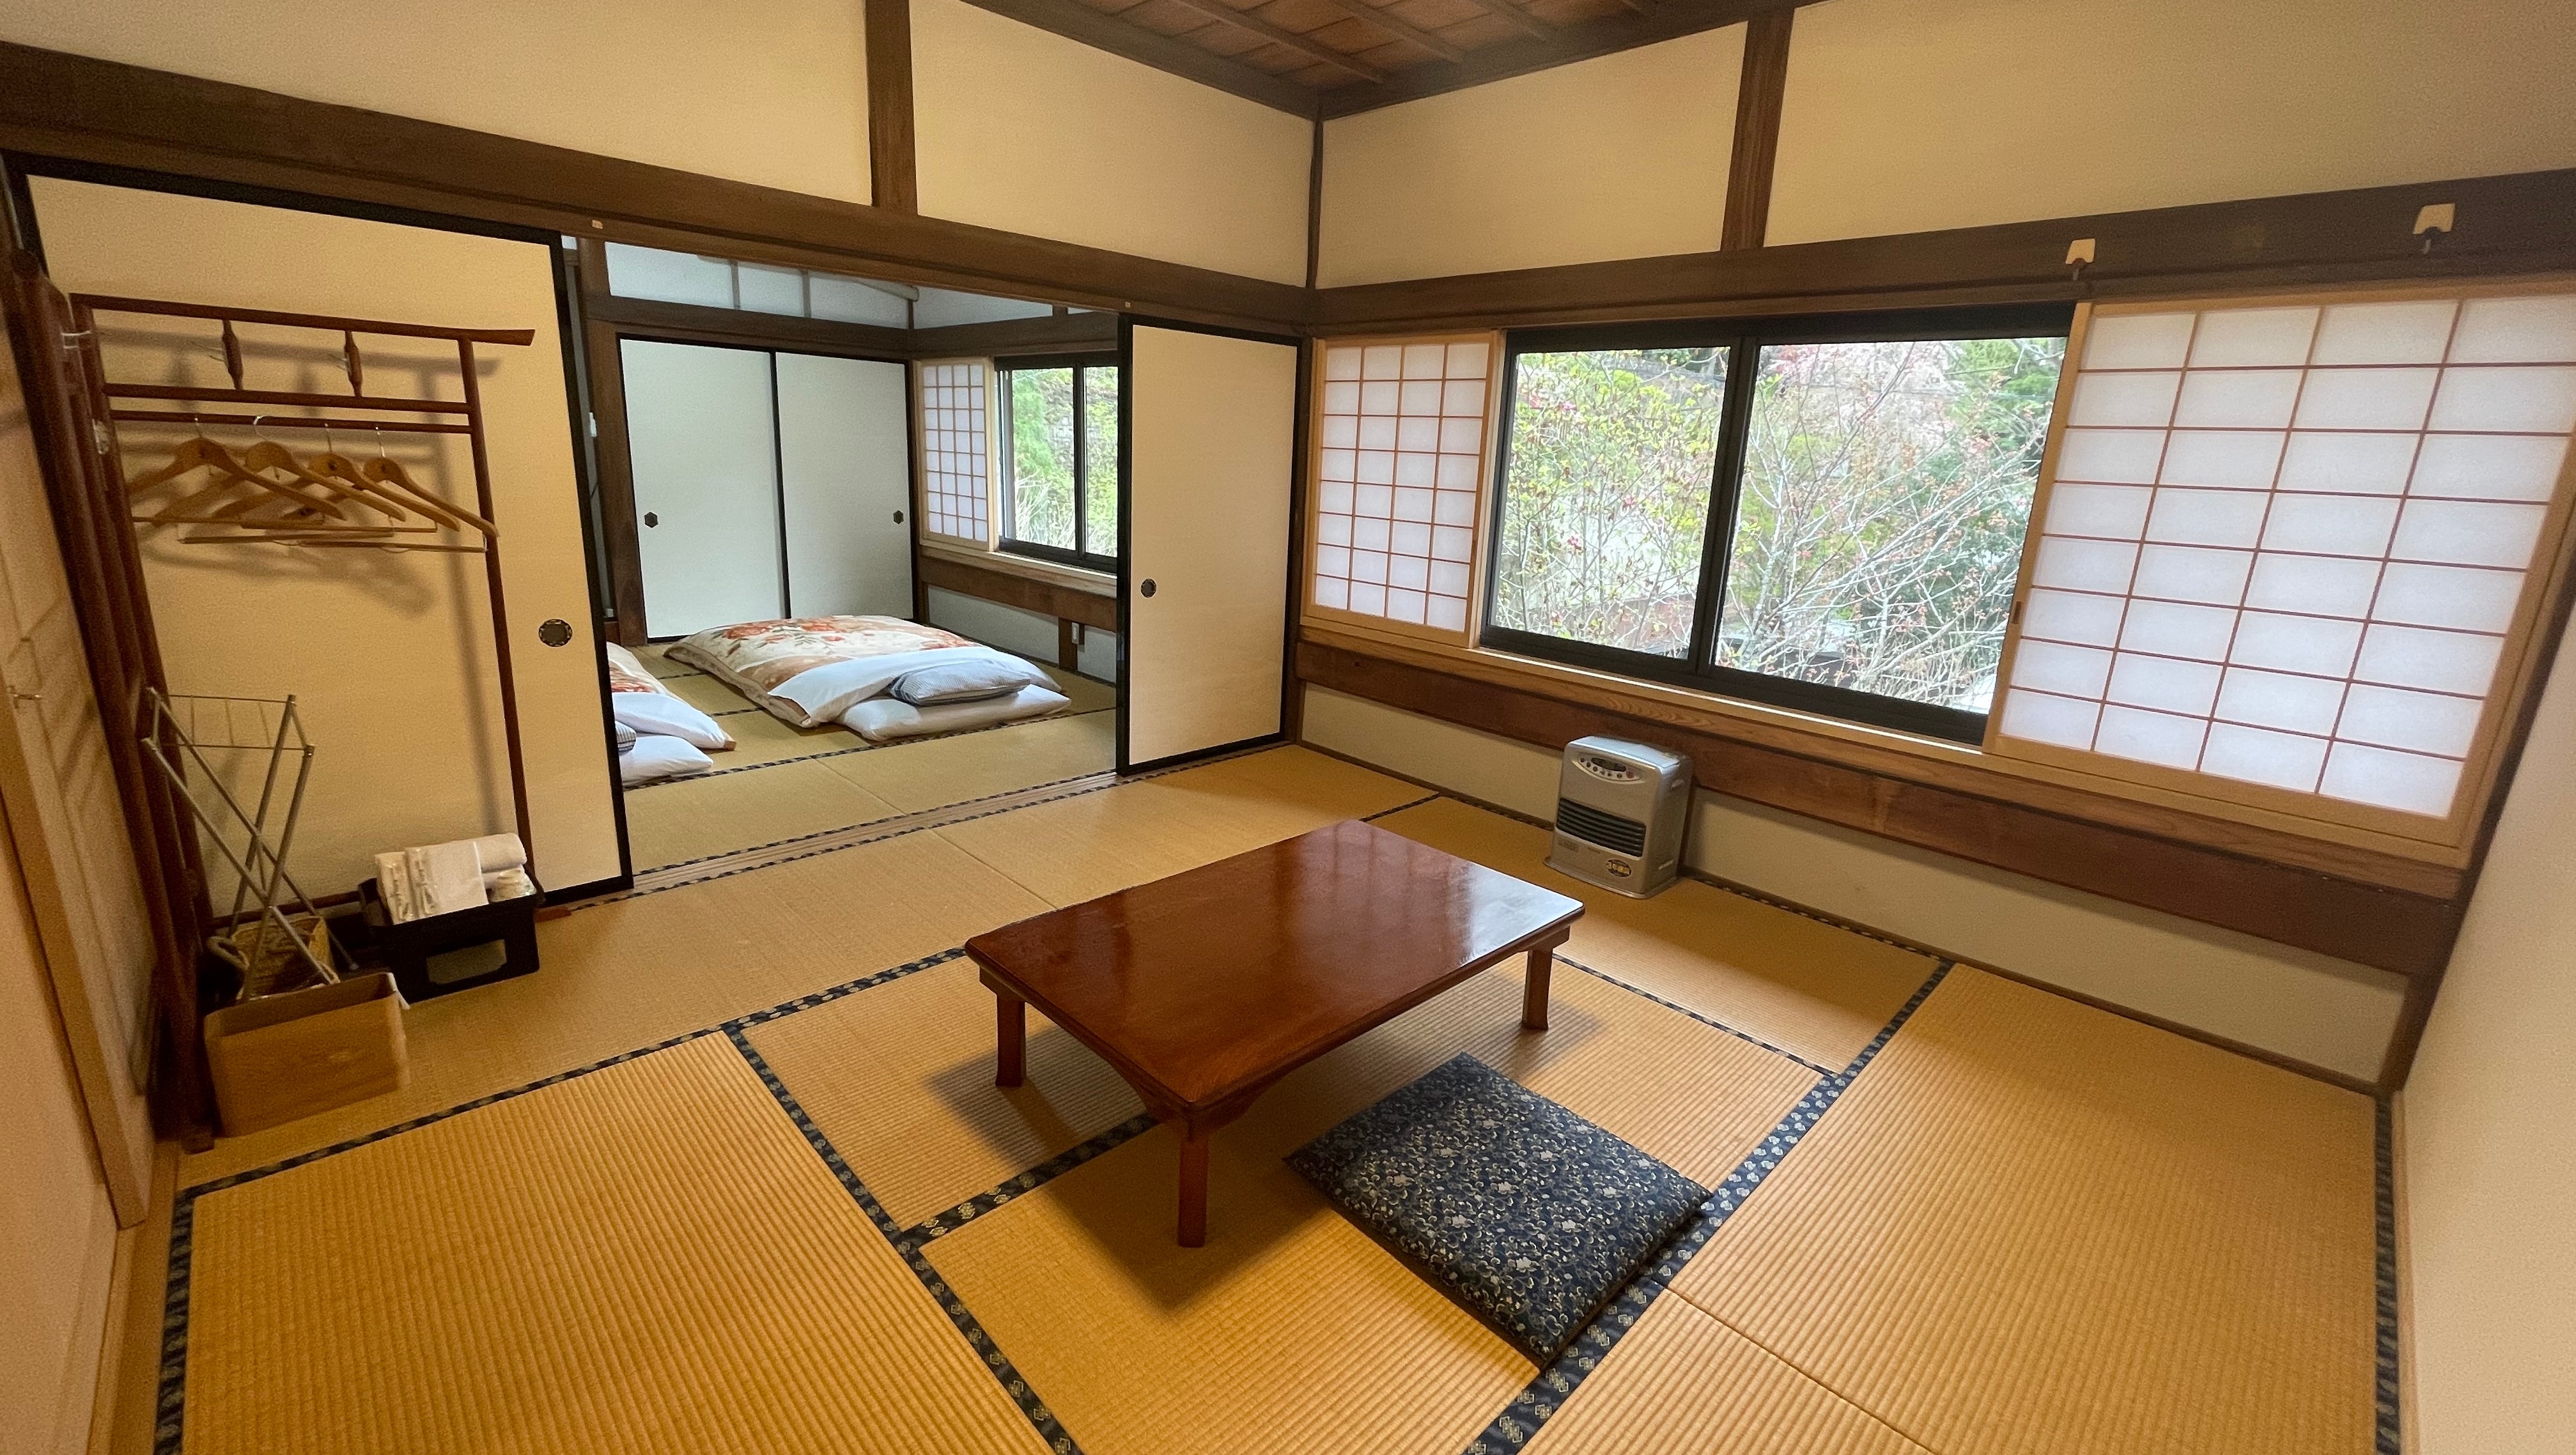 【日式房2房】日式房-16张榻榻米迎接愉快的宿房早晨